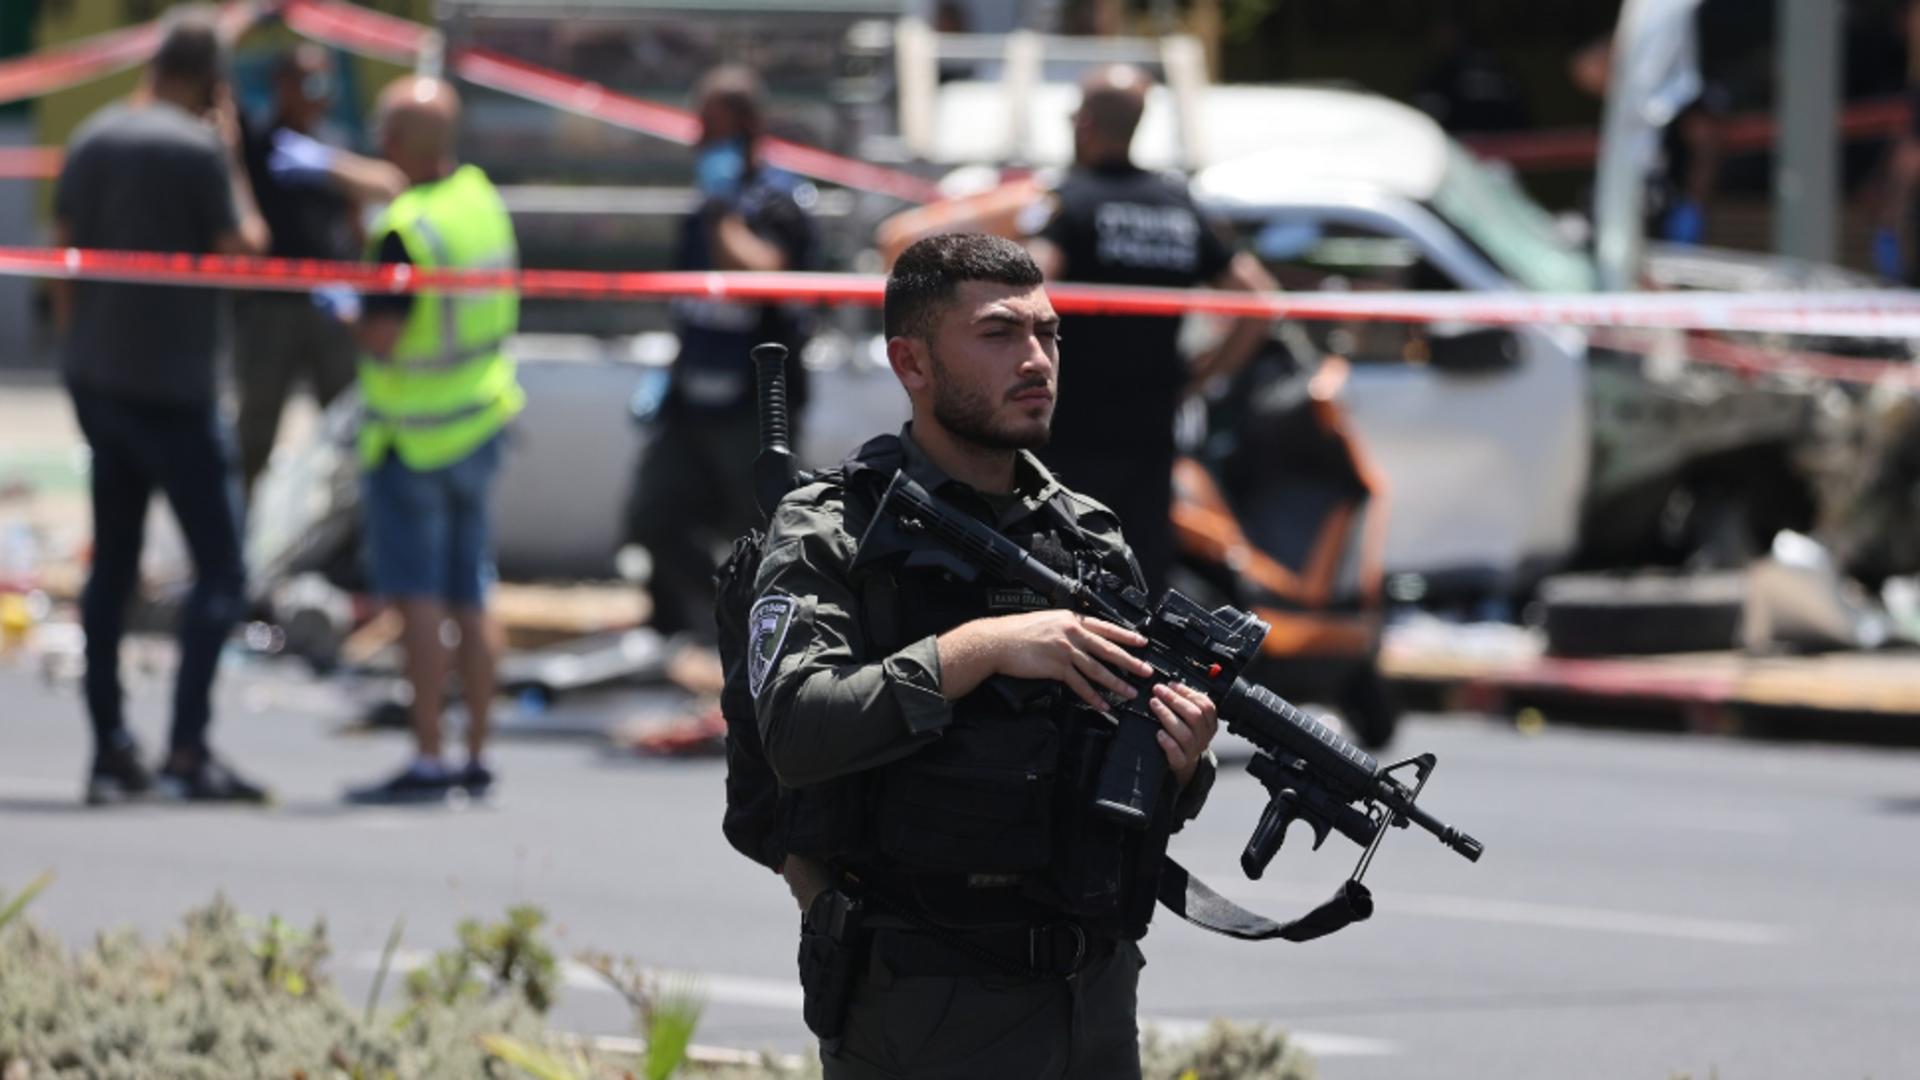 Atentat terorist la Tel Aviv. O mașină a intrat în plin în pietoni, apoi șoferul a coborât să înjunghie oameni la întâmplare: cel puțin 6 victime